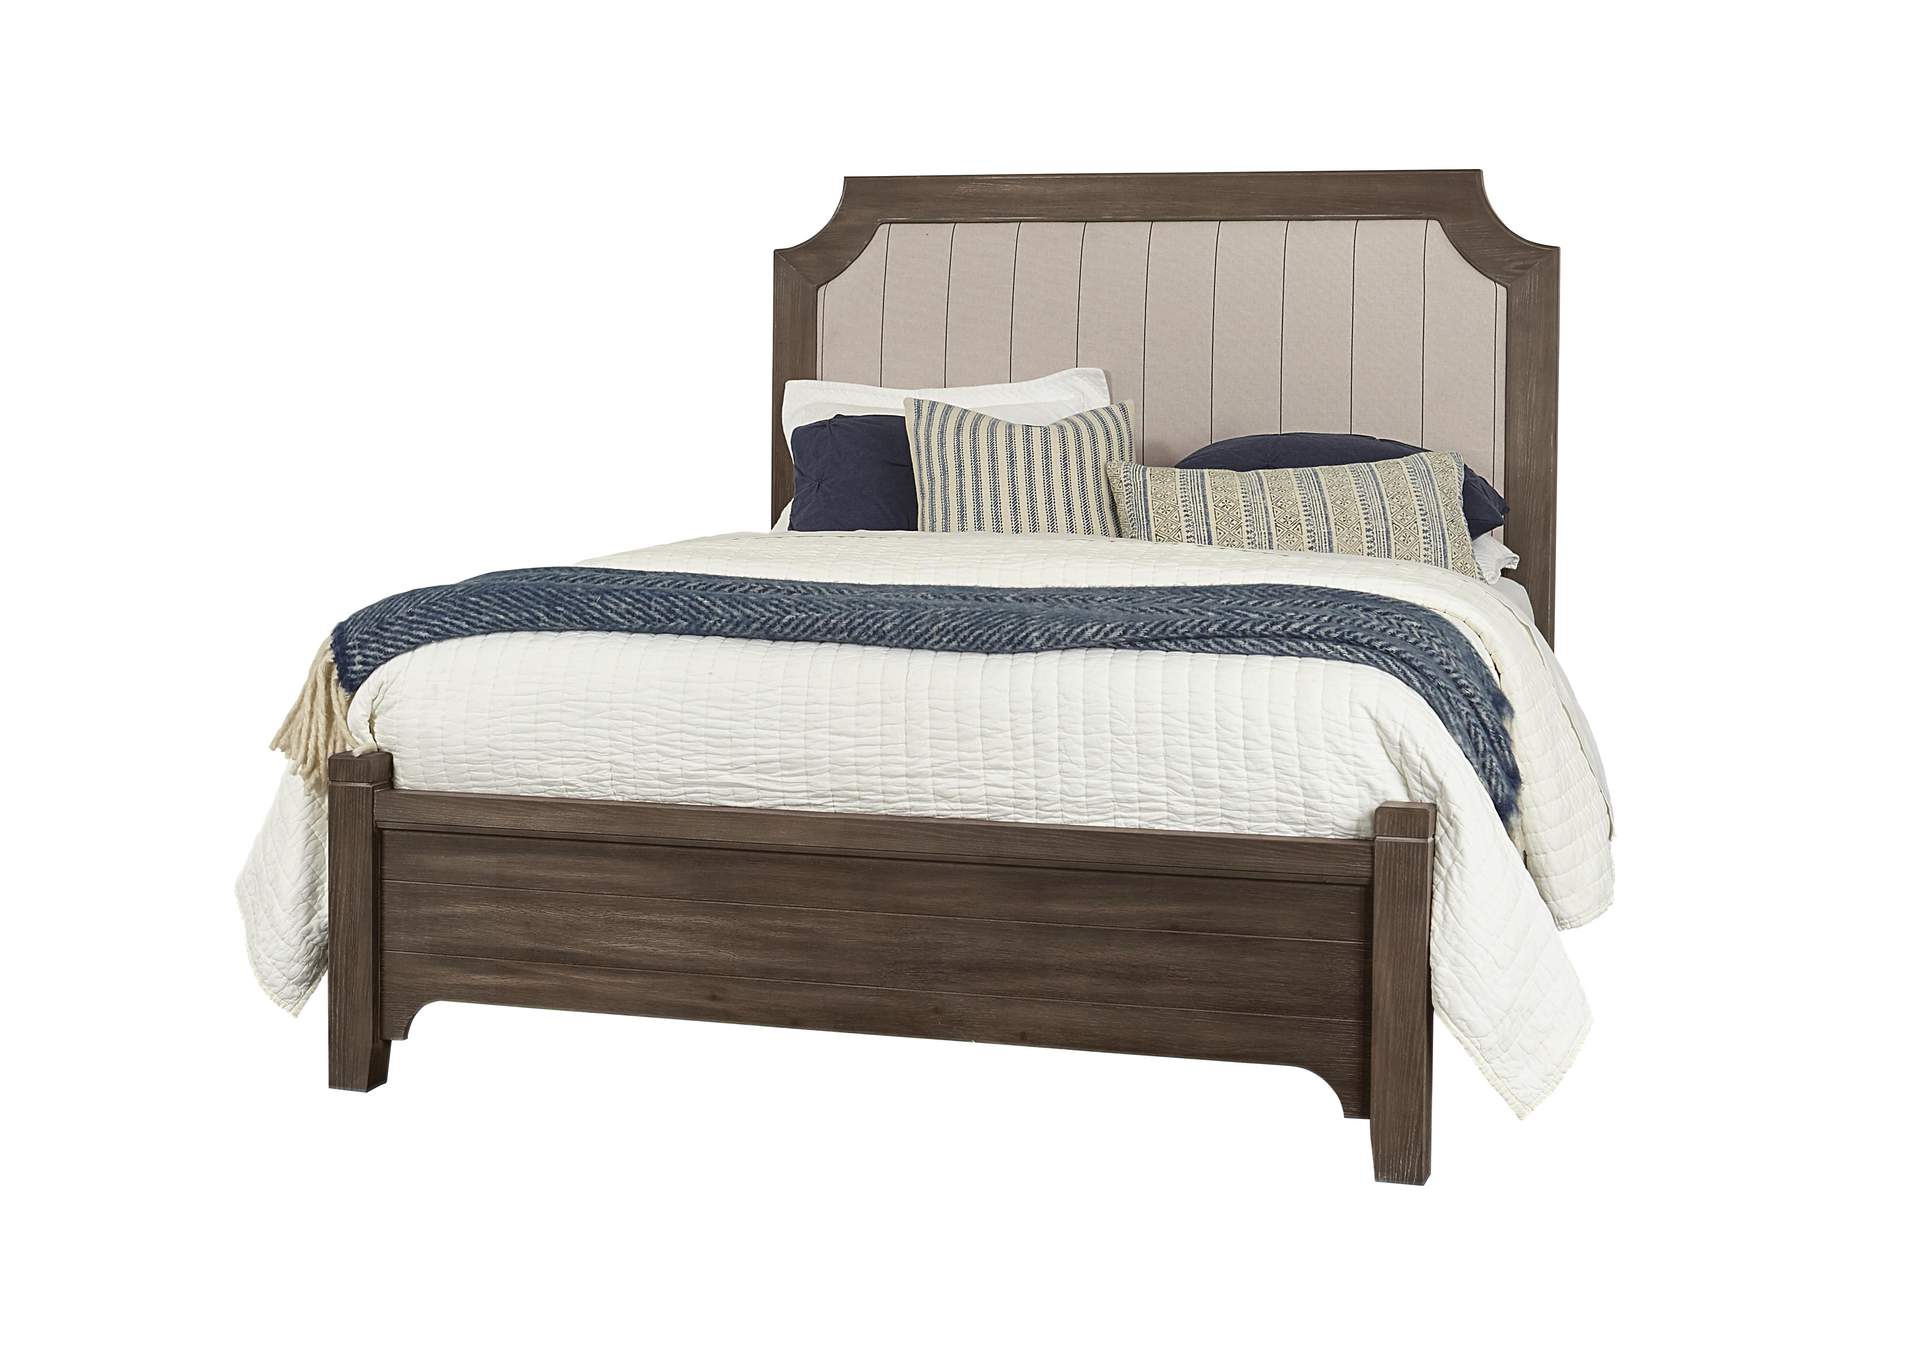 Bungalow Cararra Upholstered Queen Bed,Vaughan-Bassett